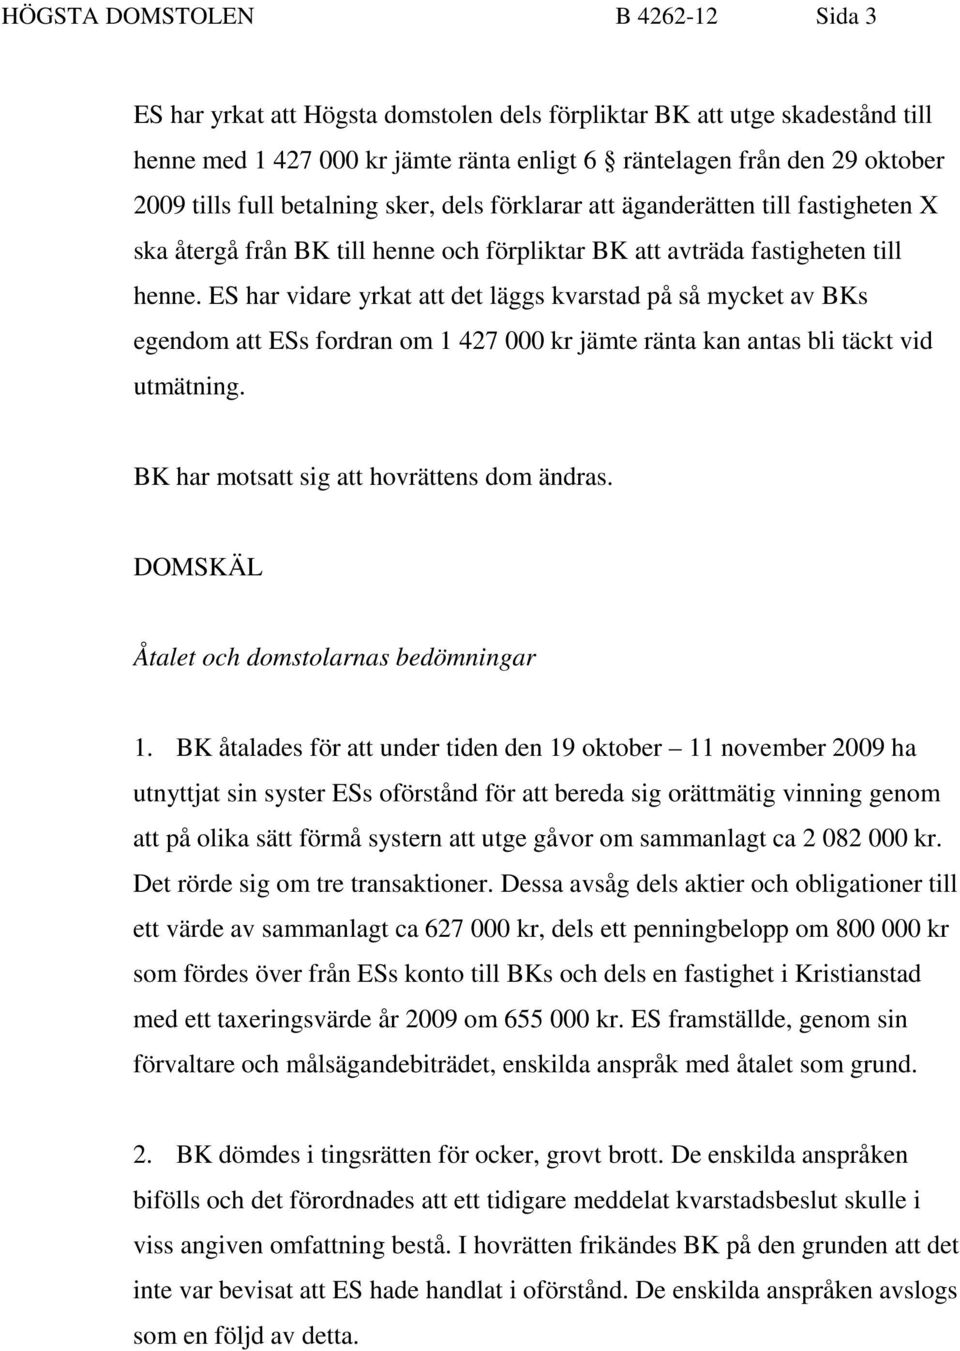 ES har vidare yrkat att det läggs kvarstad på så mycket av BKs egendom att ESs fordran om 1 427 000 kr jämte ränta kan antas bli täckt vid utmätning. BK har motsatt sig att hovrättens dom ändras.